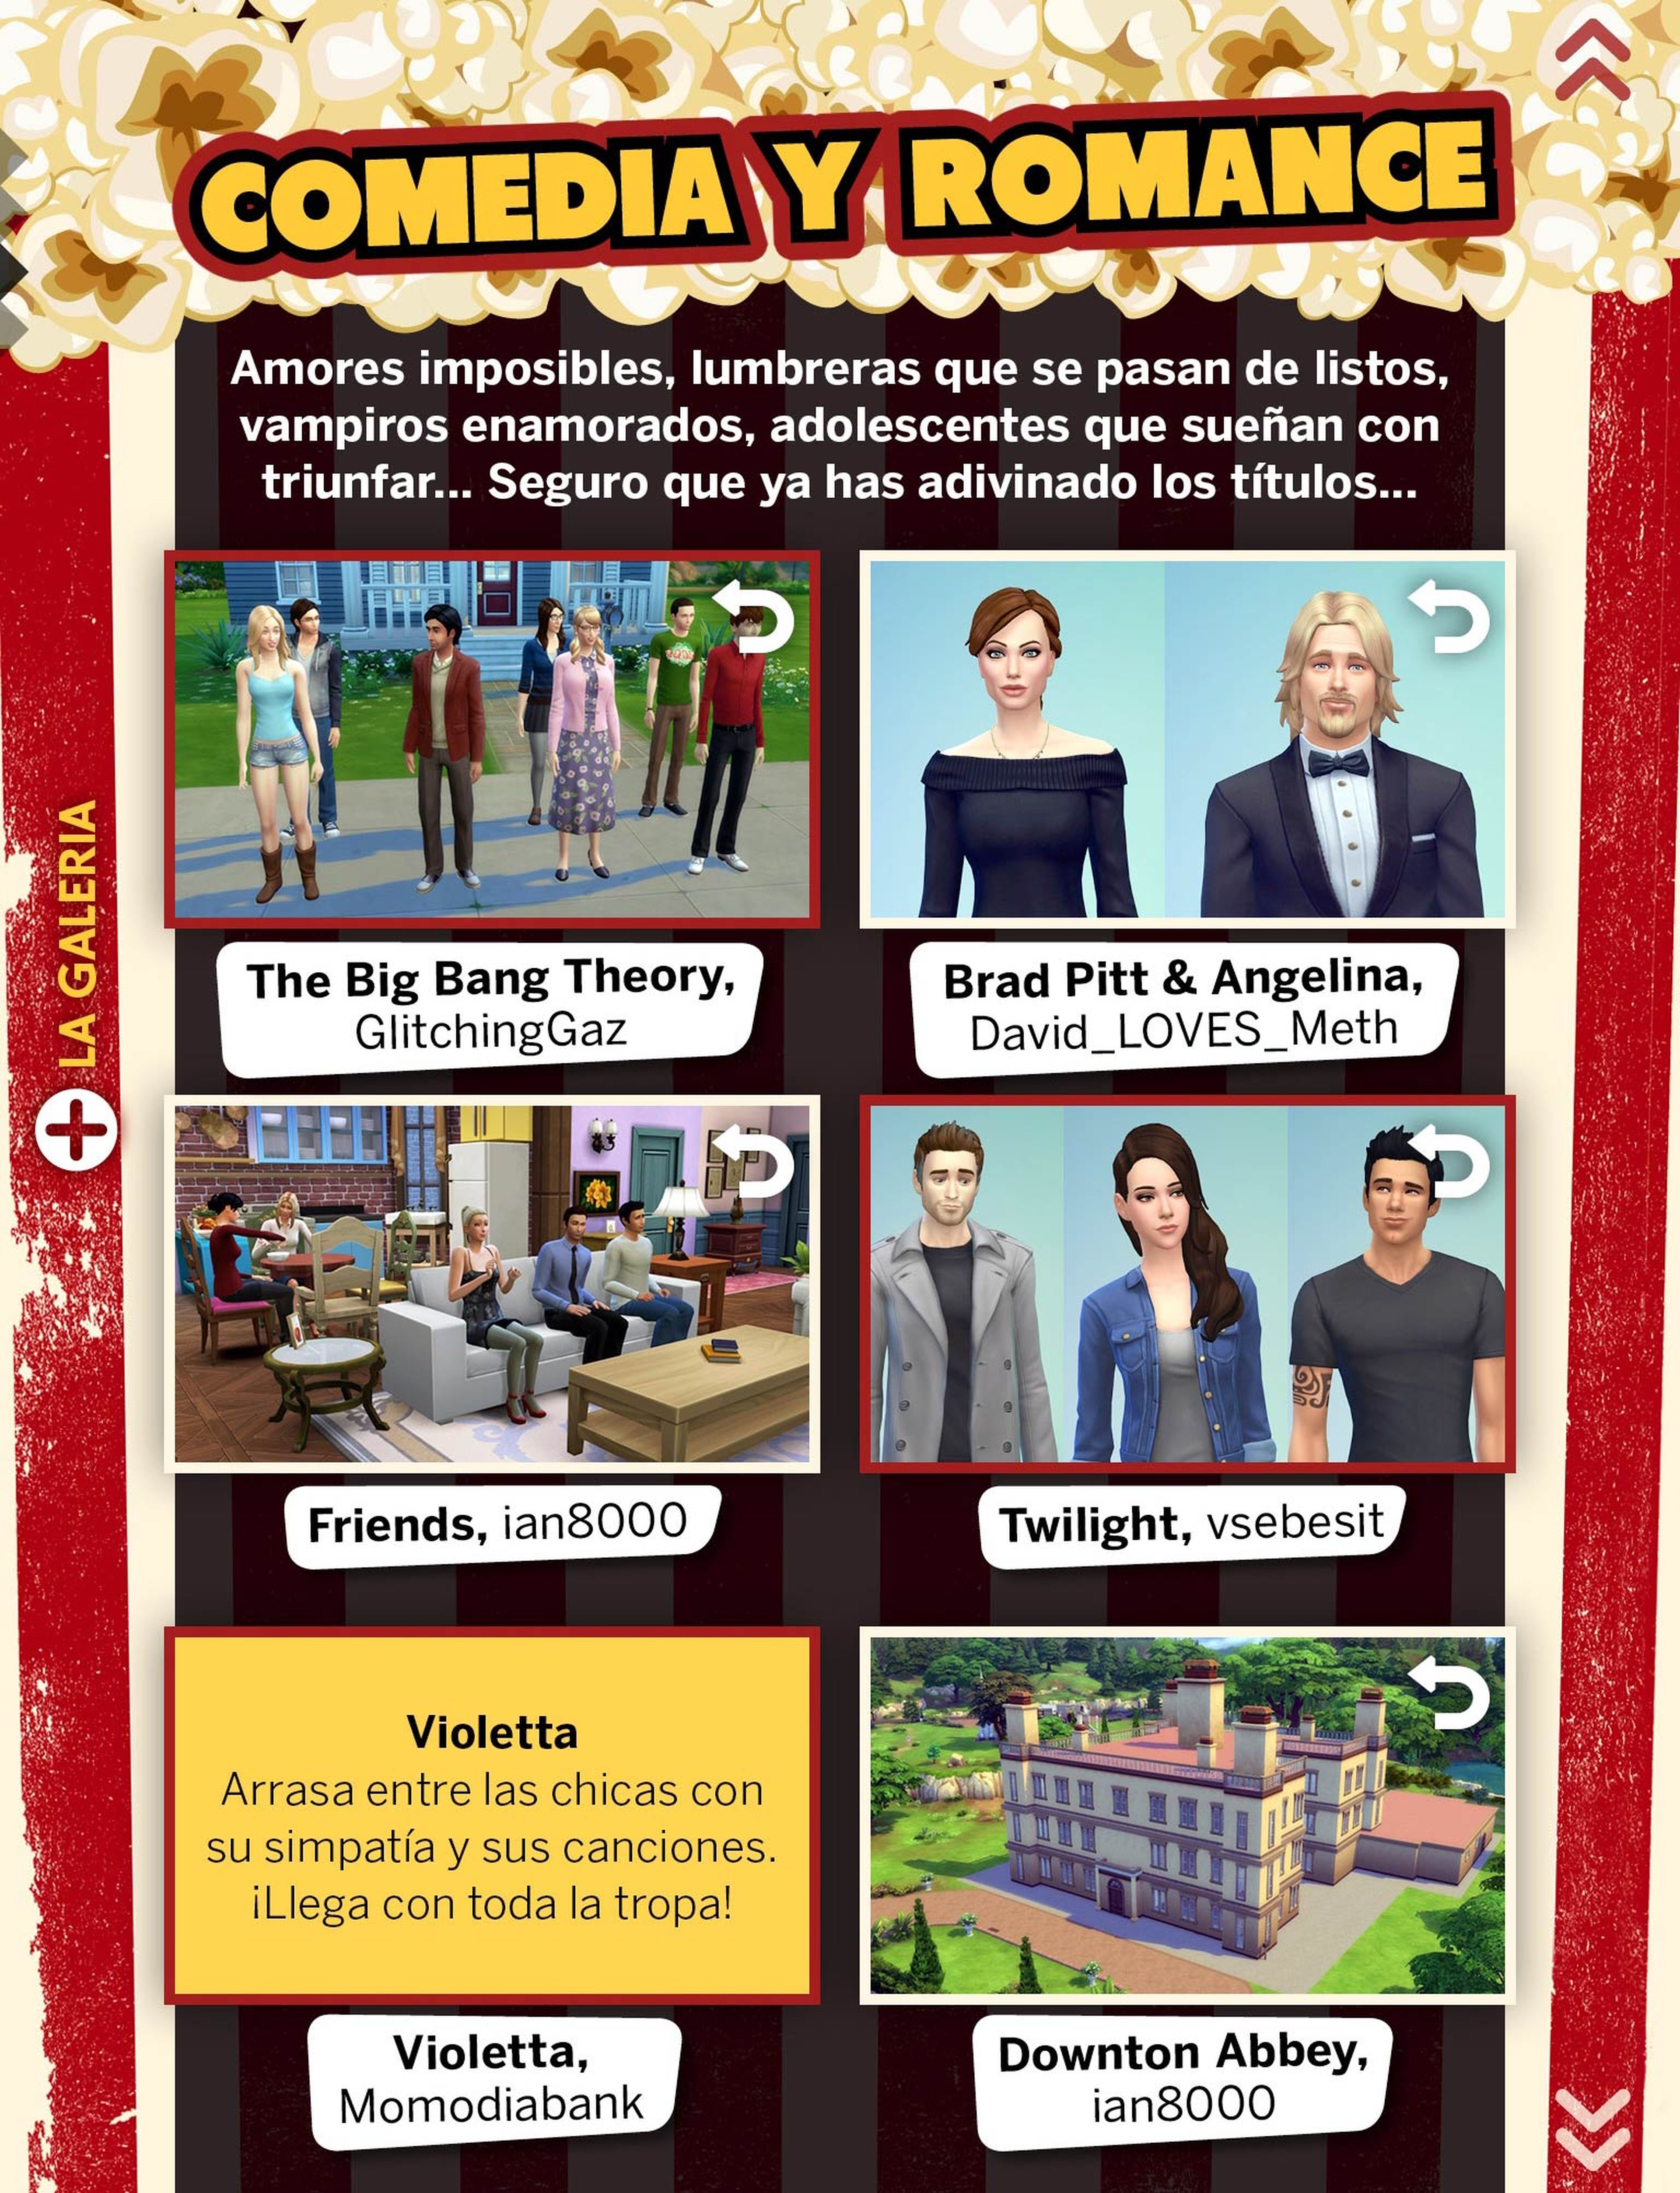 ¡Ya puedes descargar gratis el número 16 de La Revista Oficial de Los Sims!